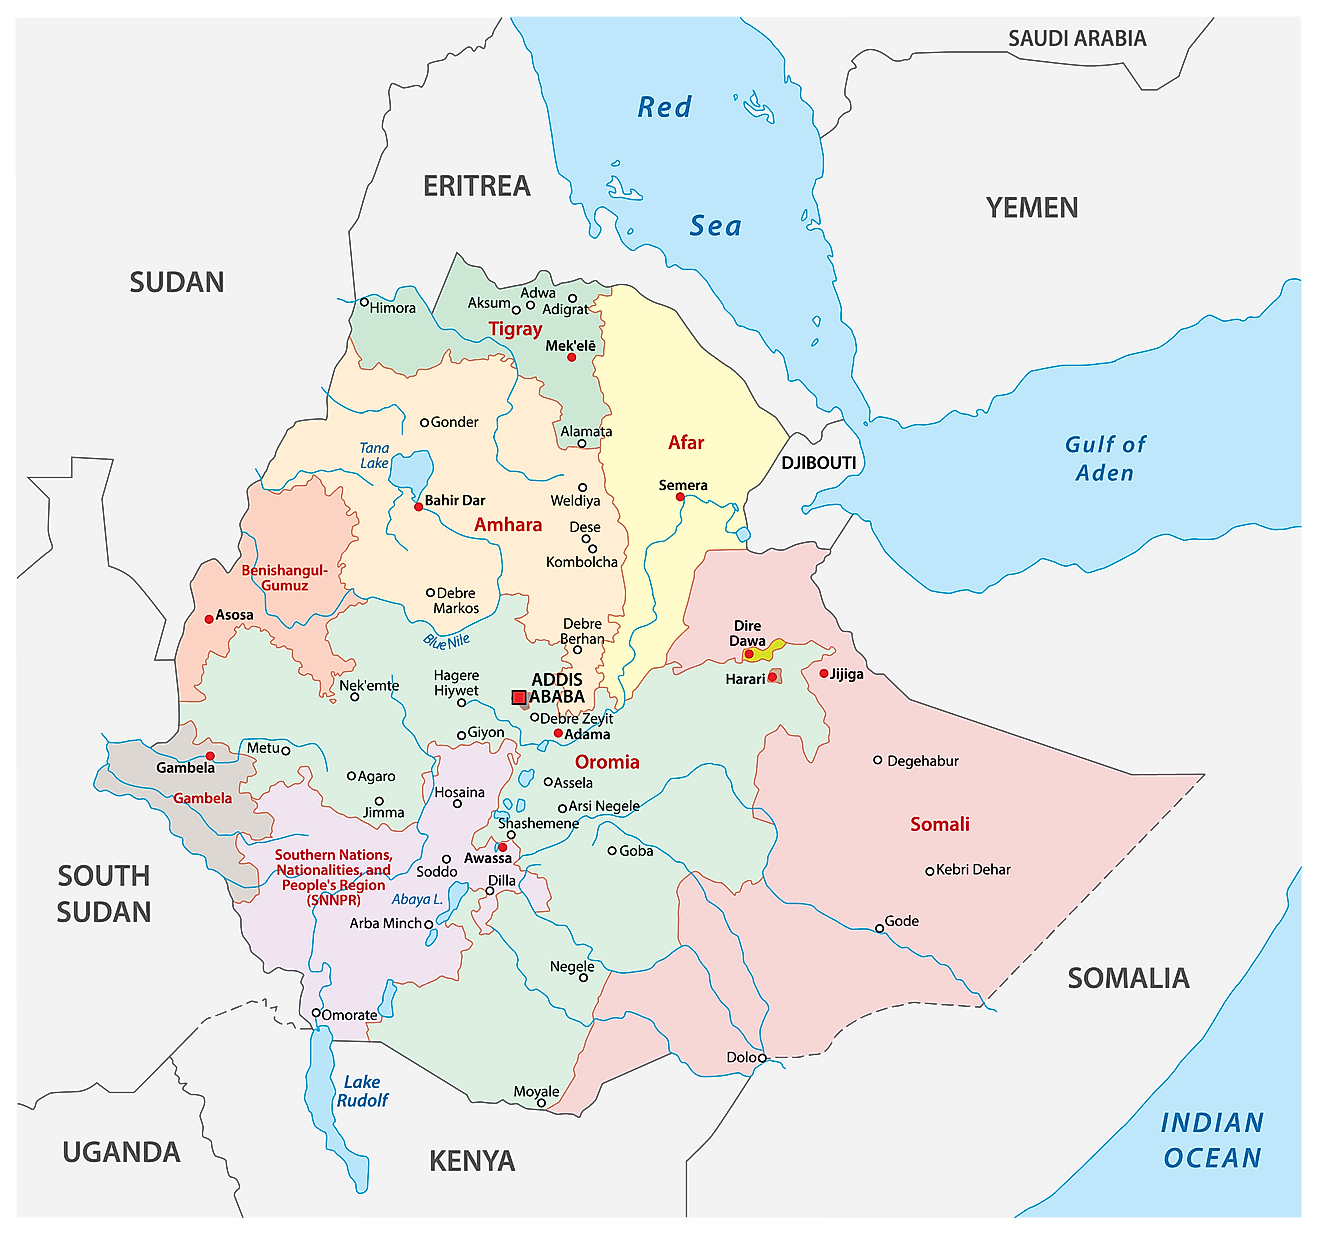 Mapa político de Etiopía que muestra las regiones, sus capitales y la ciudad capital de Addis Abeba.